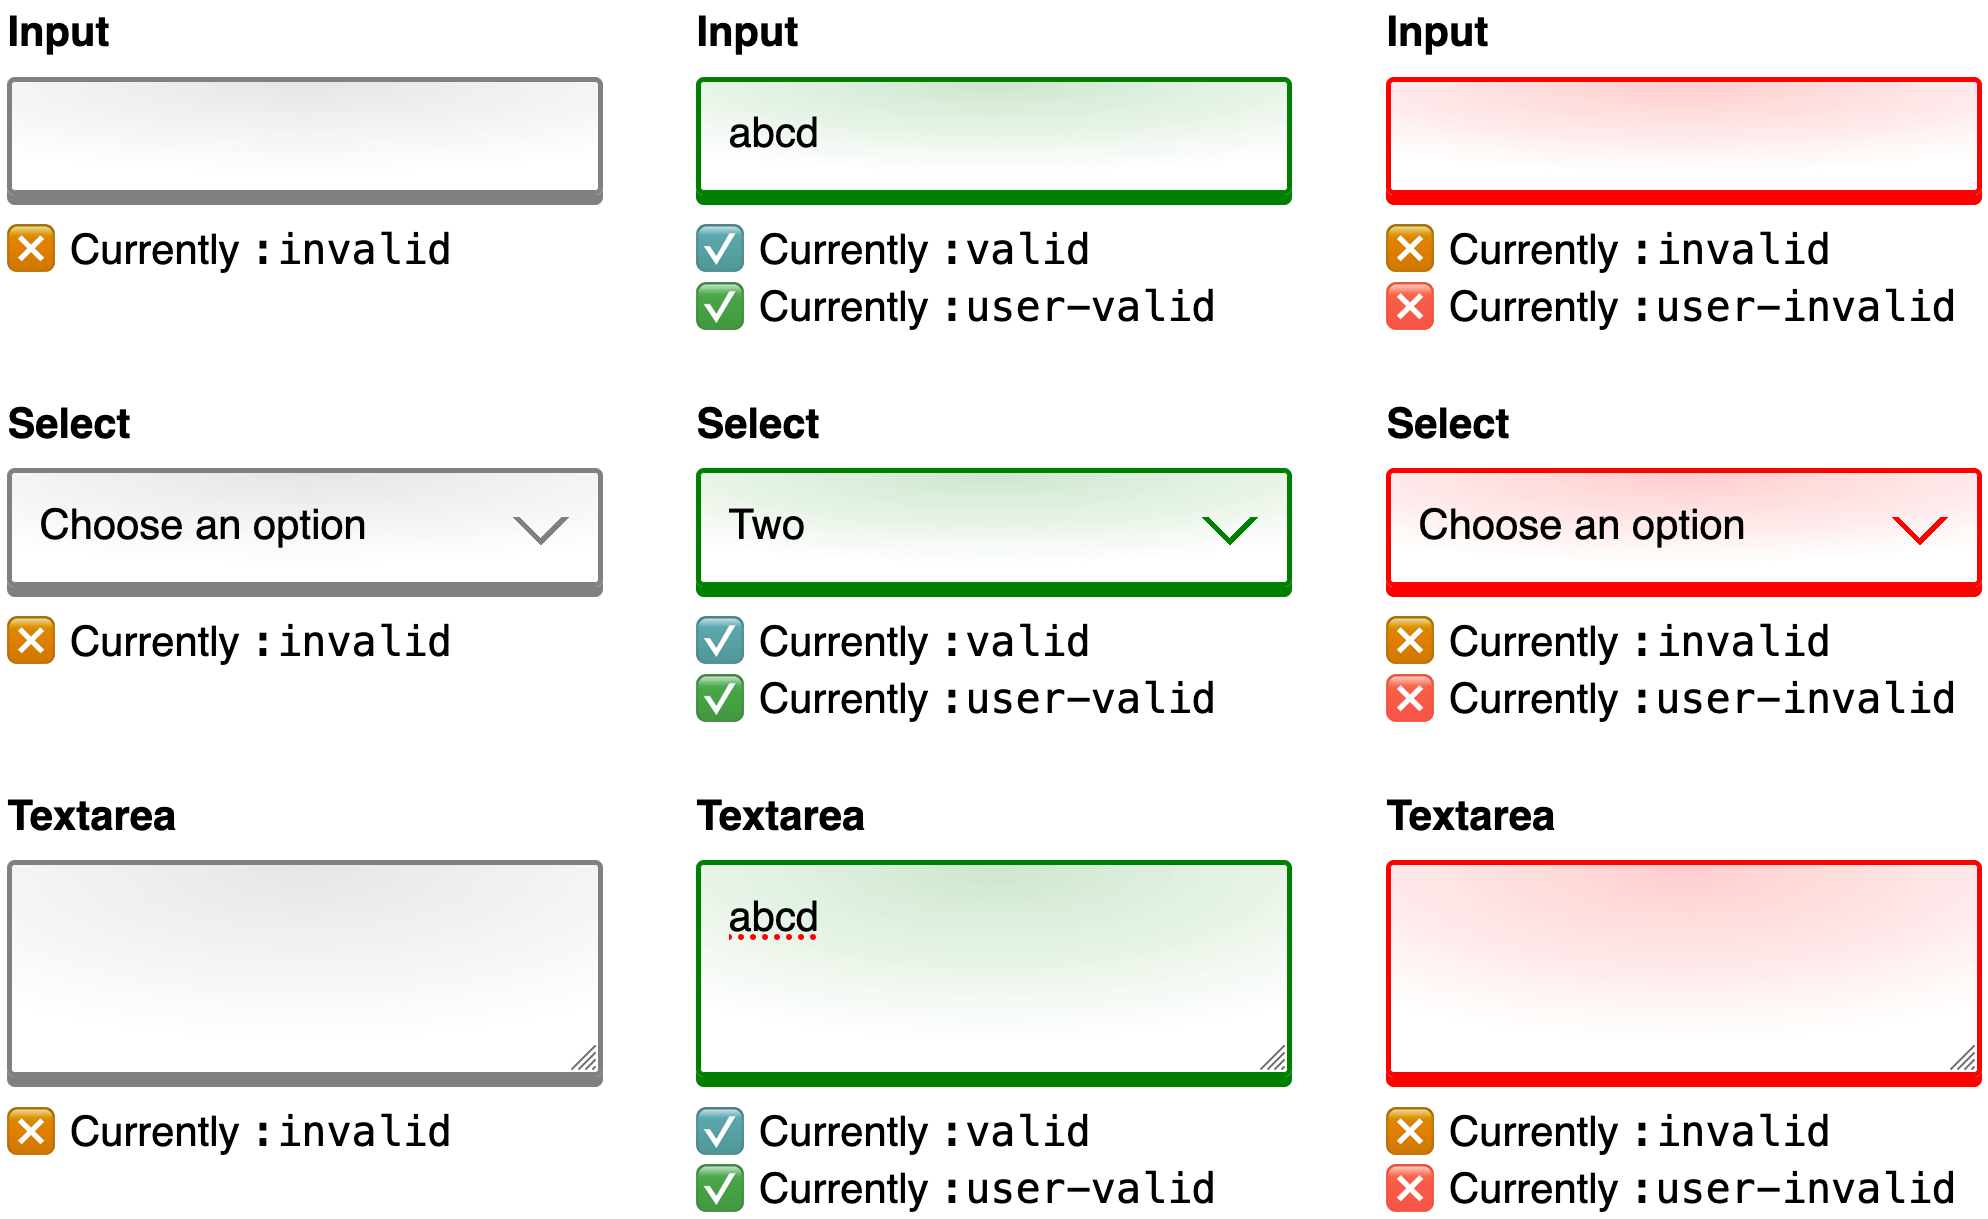 比較のために 3 つのスクリーンショットを並べた画像。各スクリーンショットは、同じ入力、選択、テキスト領域のコントロールがあるウェブフォームを示しています。最初のスクリーンショットは、ユーザー入力前の初期状態のフォームを示しています。コントロールの枠線はグレーで表示され、各コントロールが :invalid 疑似クラス セレクタに現在一致することを示すヘルプテキストを以下に示します。2 つ目のスクリーンショットは、ユーザーが各コントロールを入力した後の同じフォームを示しています。コントロールの枠線は緑色です。下記のヘルプテキストでは、各コントロールが現在、:valid と :user-valid の両方の疑似クラスセレクタに一致することについて説明しています。最後の 3 枚目のスクリーンショットは、ユーザーがすべての入力を削除した後の同じフォームを示しています。コントロールの枠線は赤色です。以下のヘルプテキストでは、現在、各コントロールが :invalid と :user-invalid の両方の疑似クラス セレクタに一致することについて説明しています。